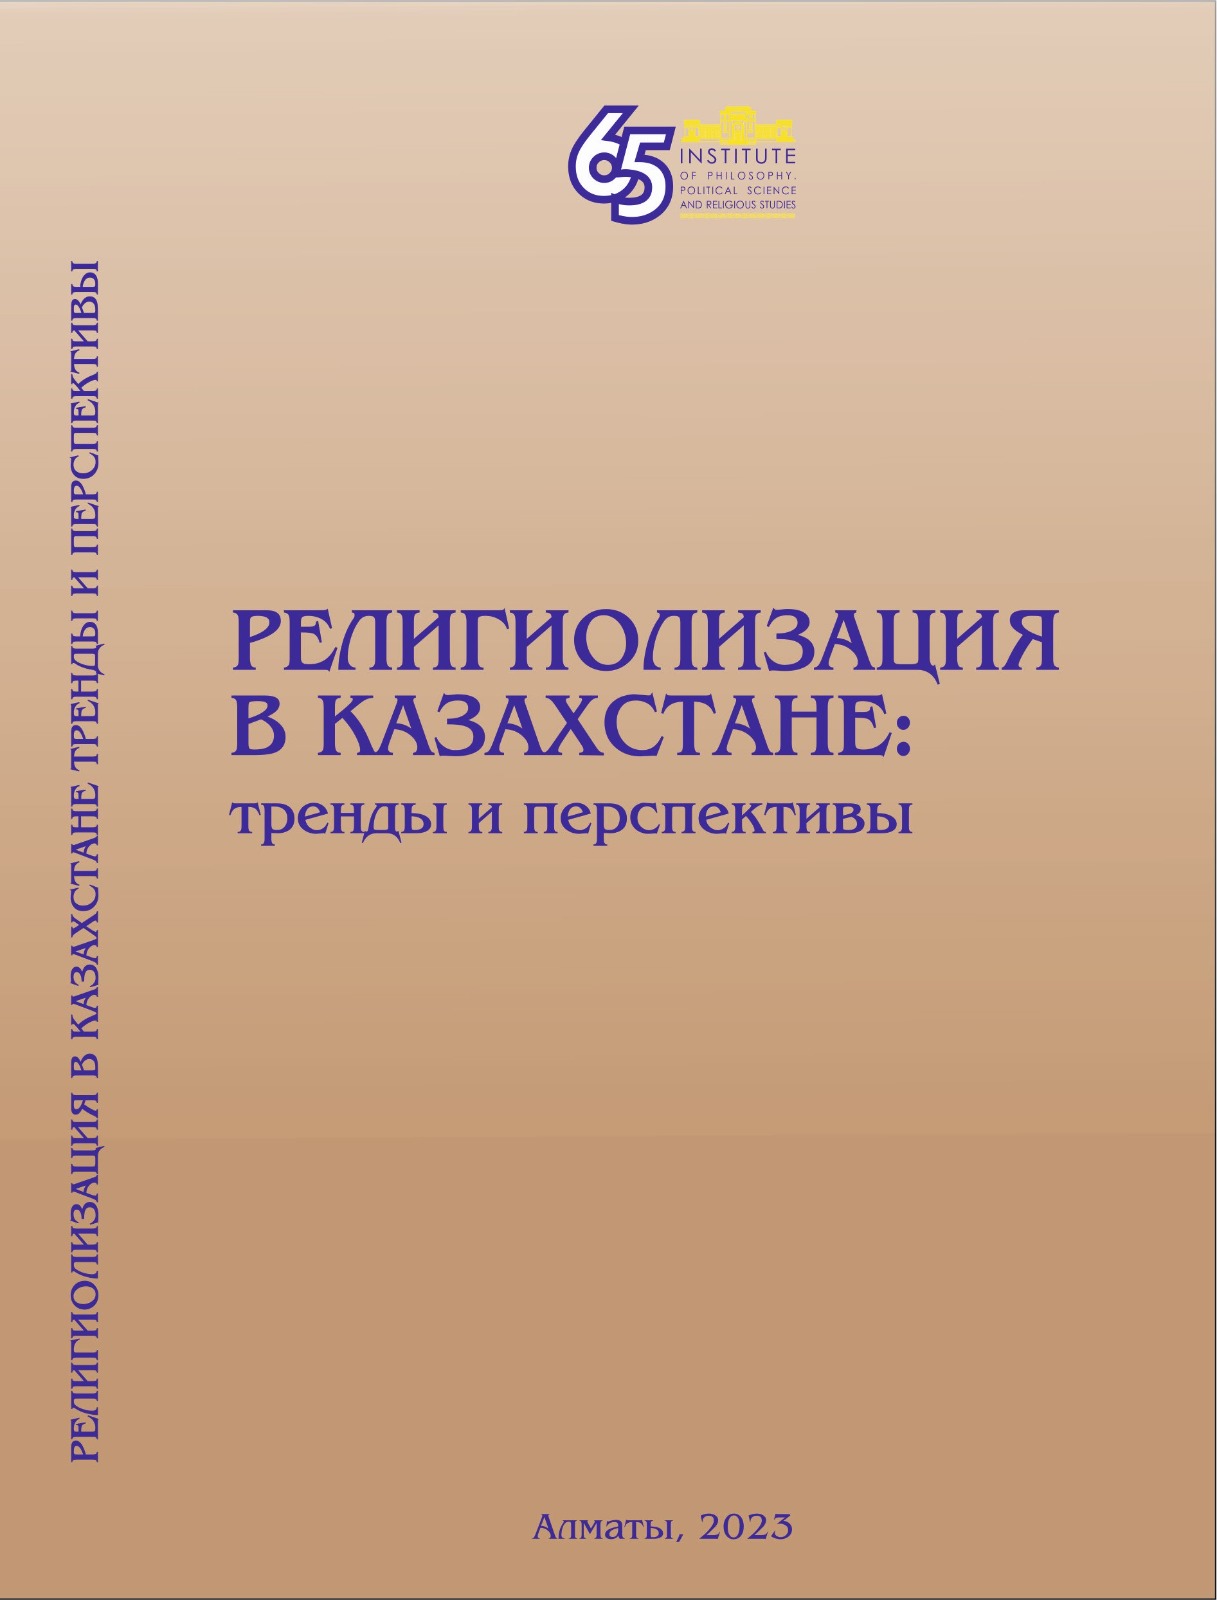 РЕЛИГИОЛИЗАЦИЯ В КАЗАХСТАНЕ: ТРЕНДЫ И ПЕРСПЕКТИВЫ